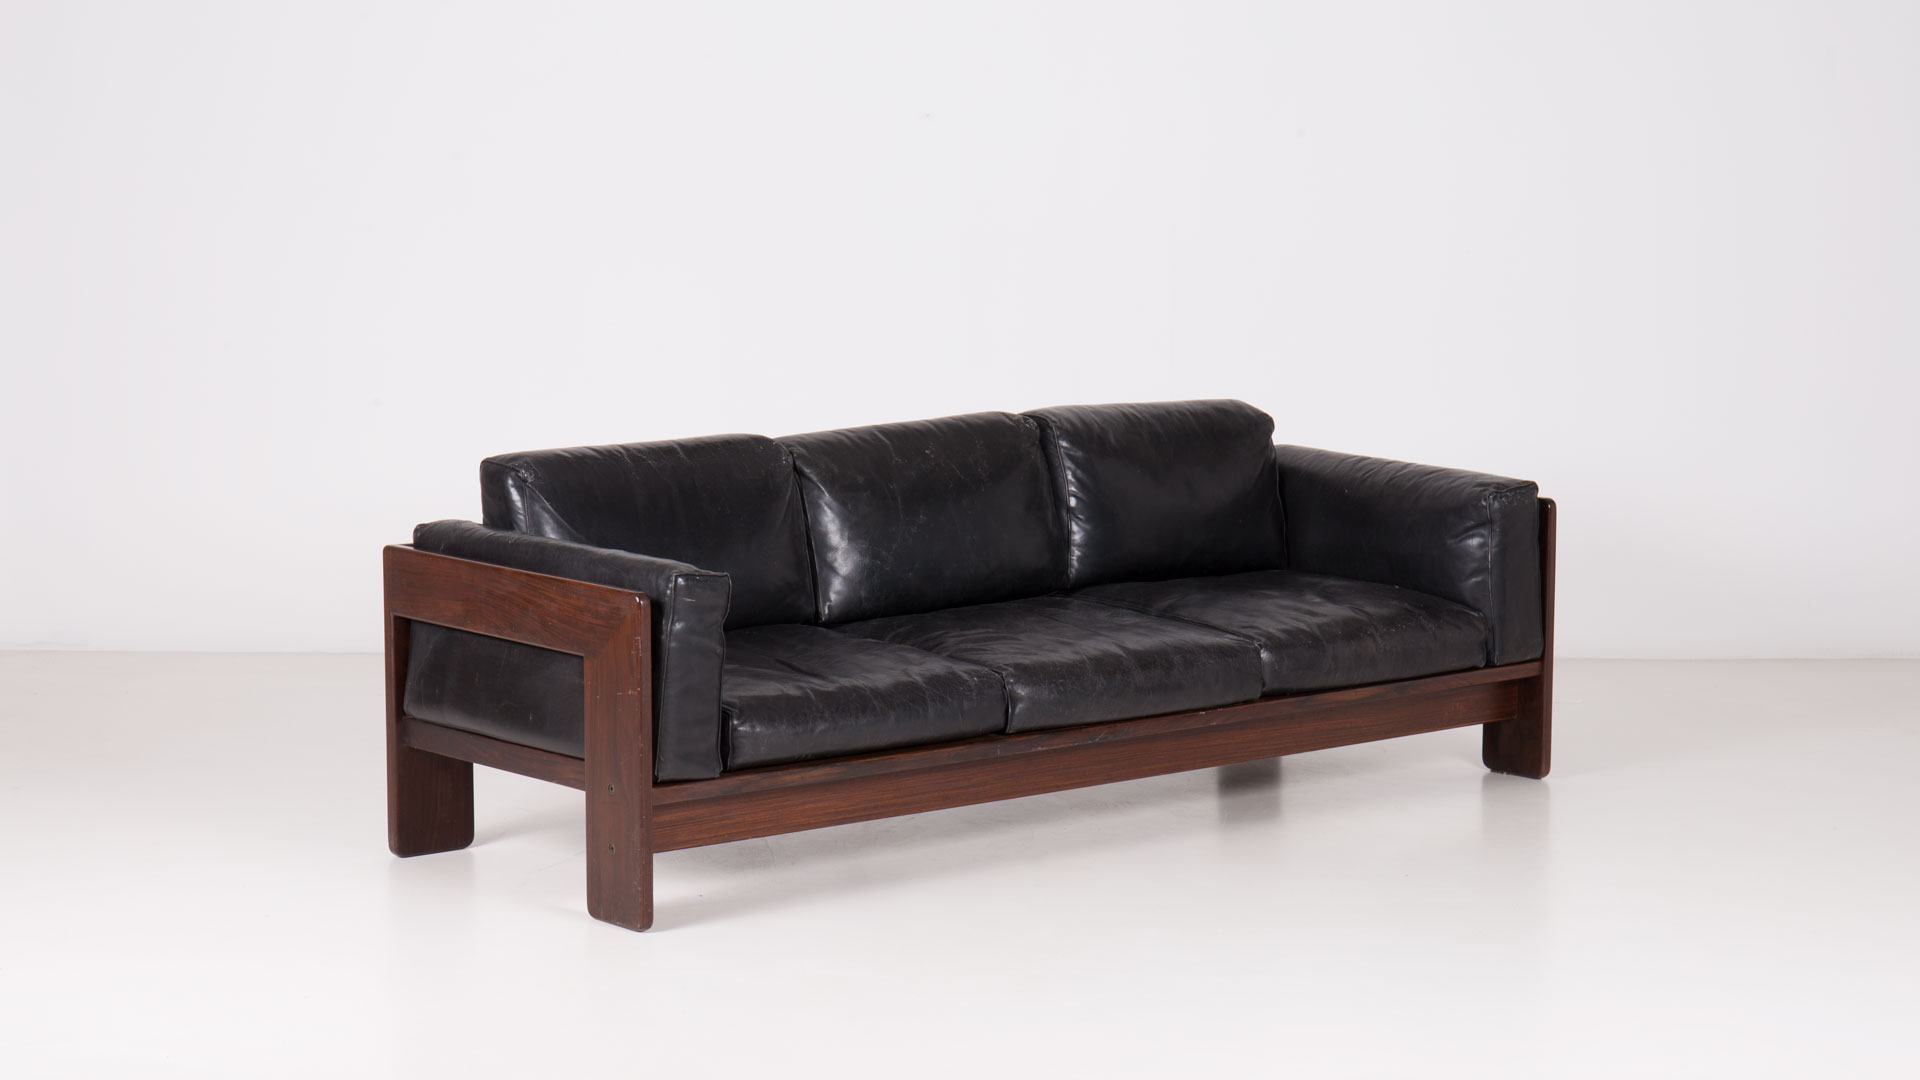 Bastiano sofa by Tobia Scarpa | Paradisoterrestre